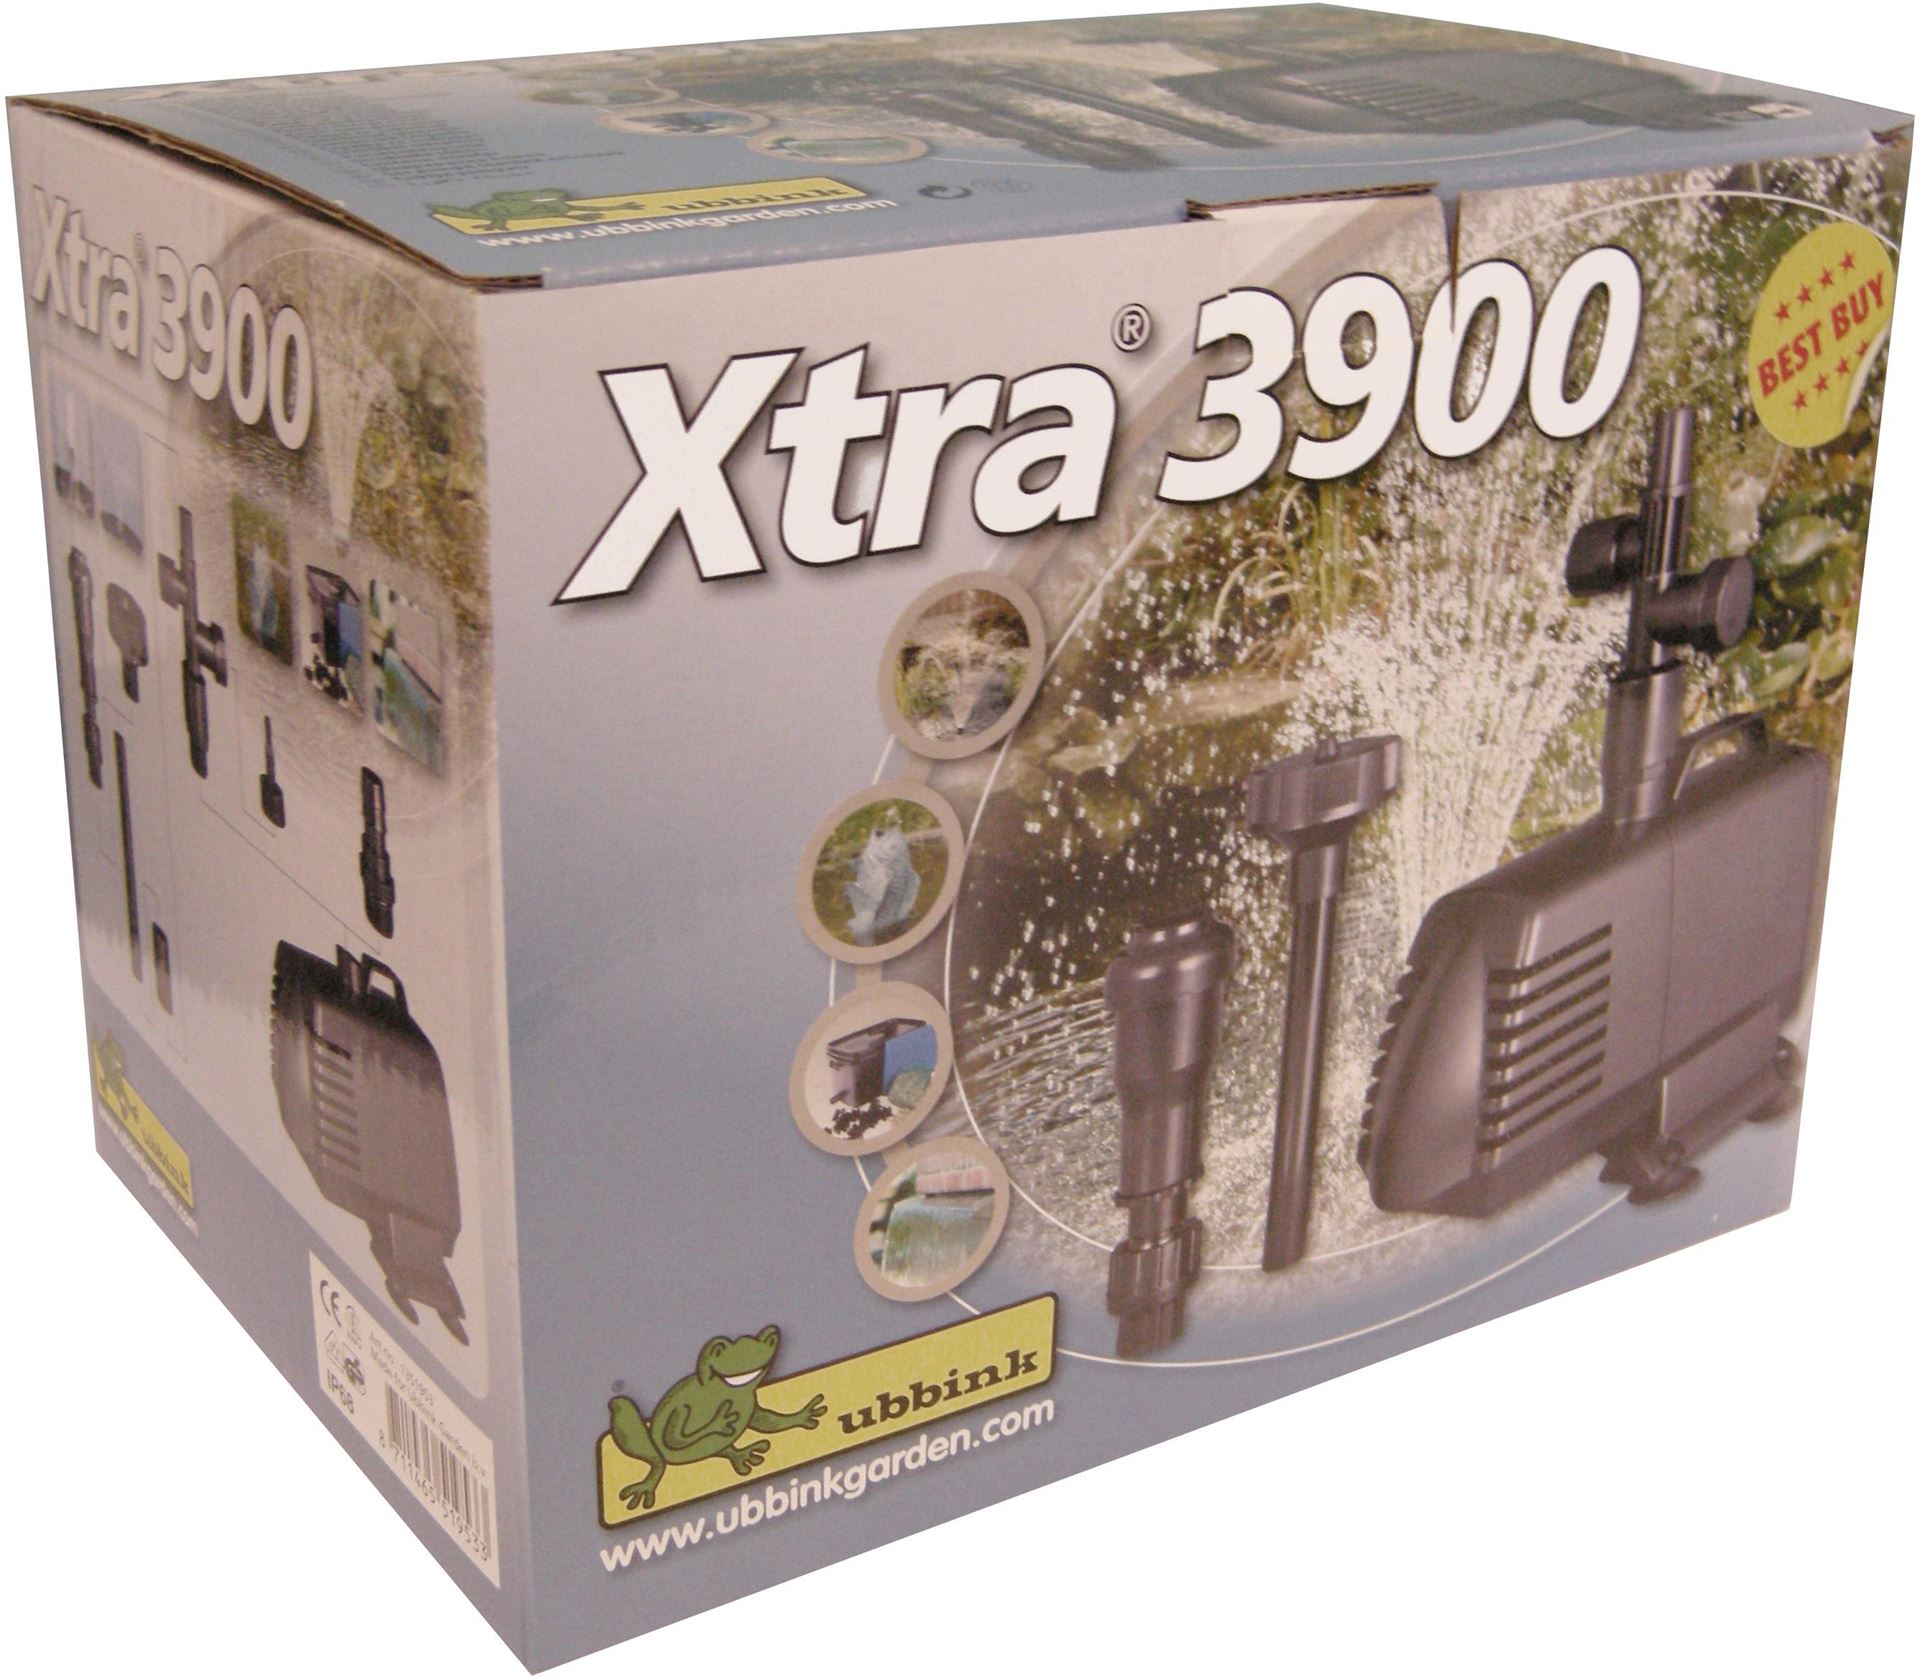 Xtra-3900